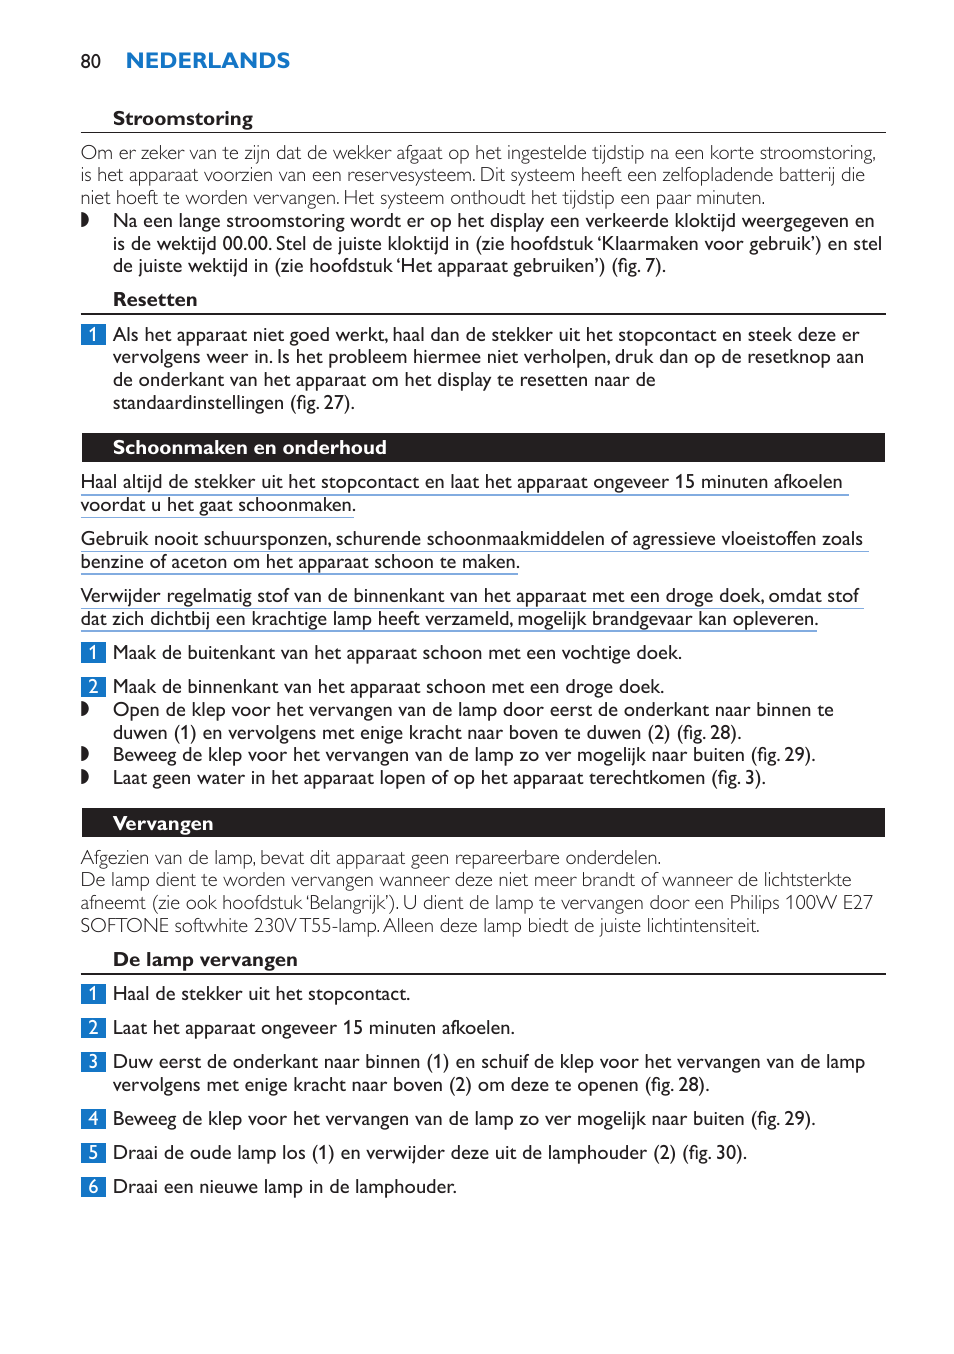 Krachtig Vel achterlijk persoon Resetten, Schoonmaken en onderhoud, Vervangen | Philips Wake-up Light User  Manual | Page 80 / 136